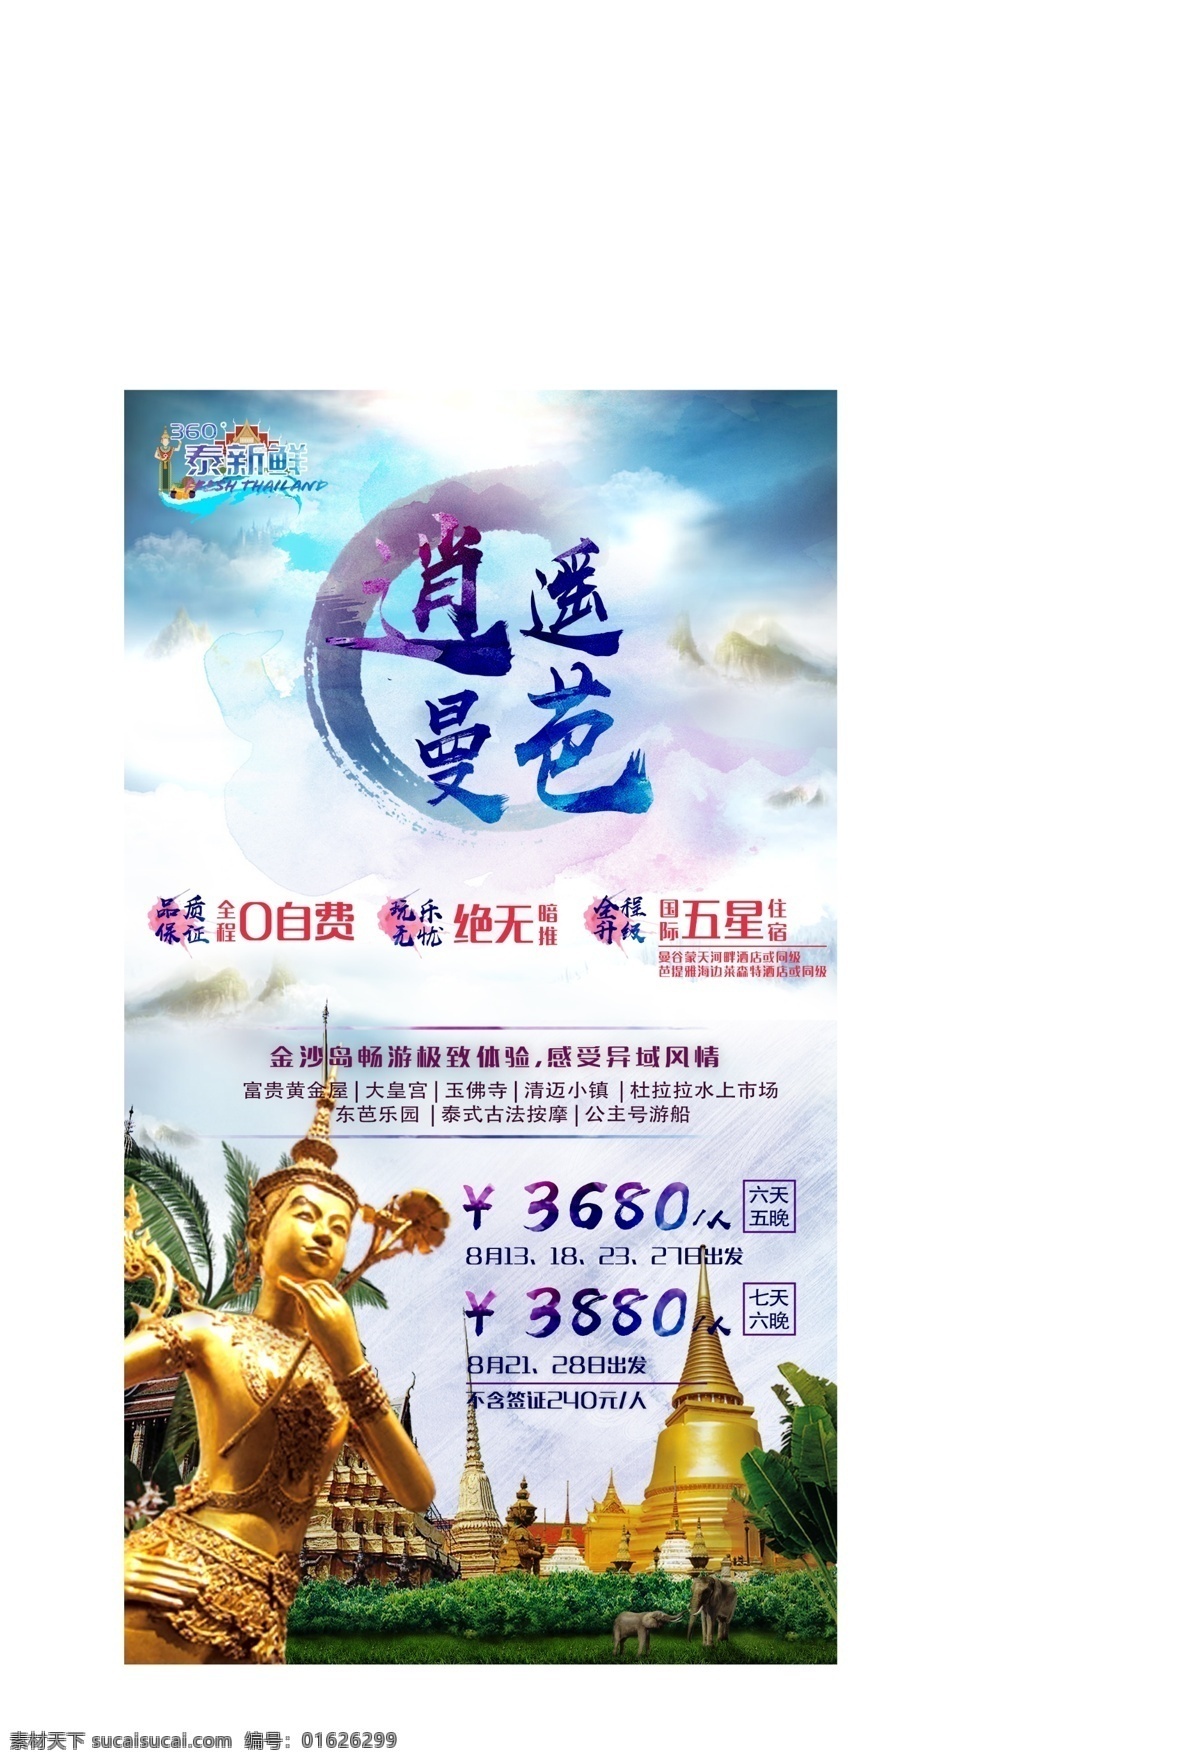 曼巴 路线 旅游 泰国 曼谷 芭提雅 海报 传播图 展板 旅行 出境游